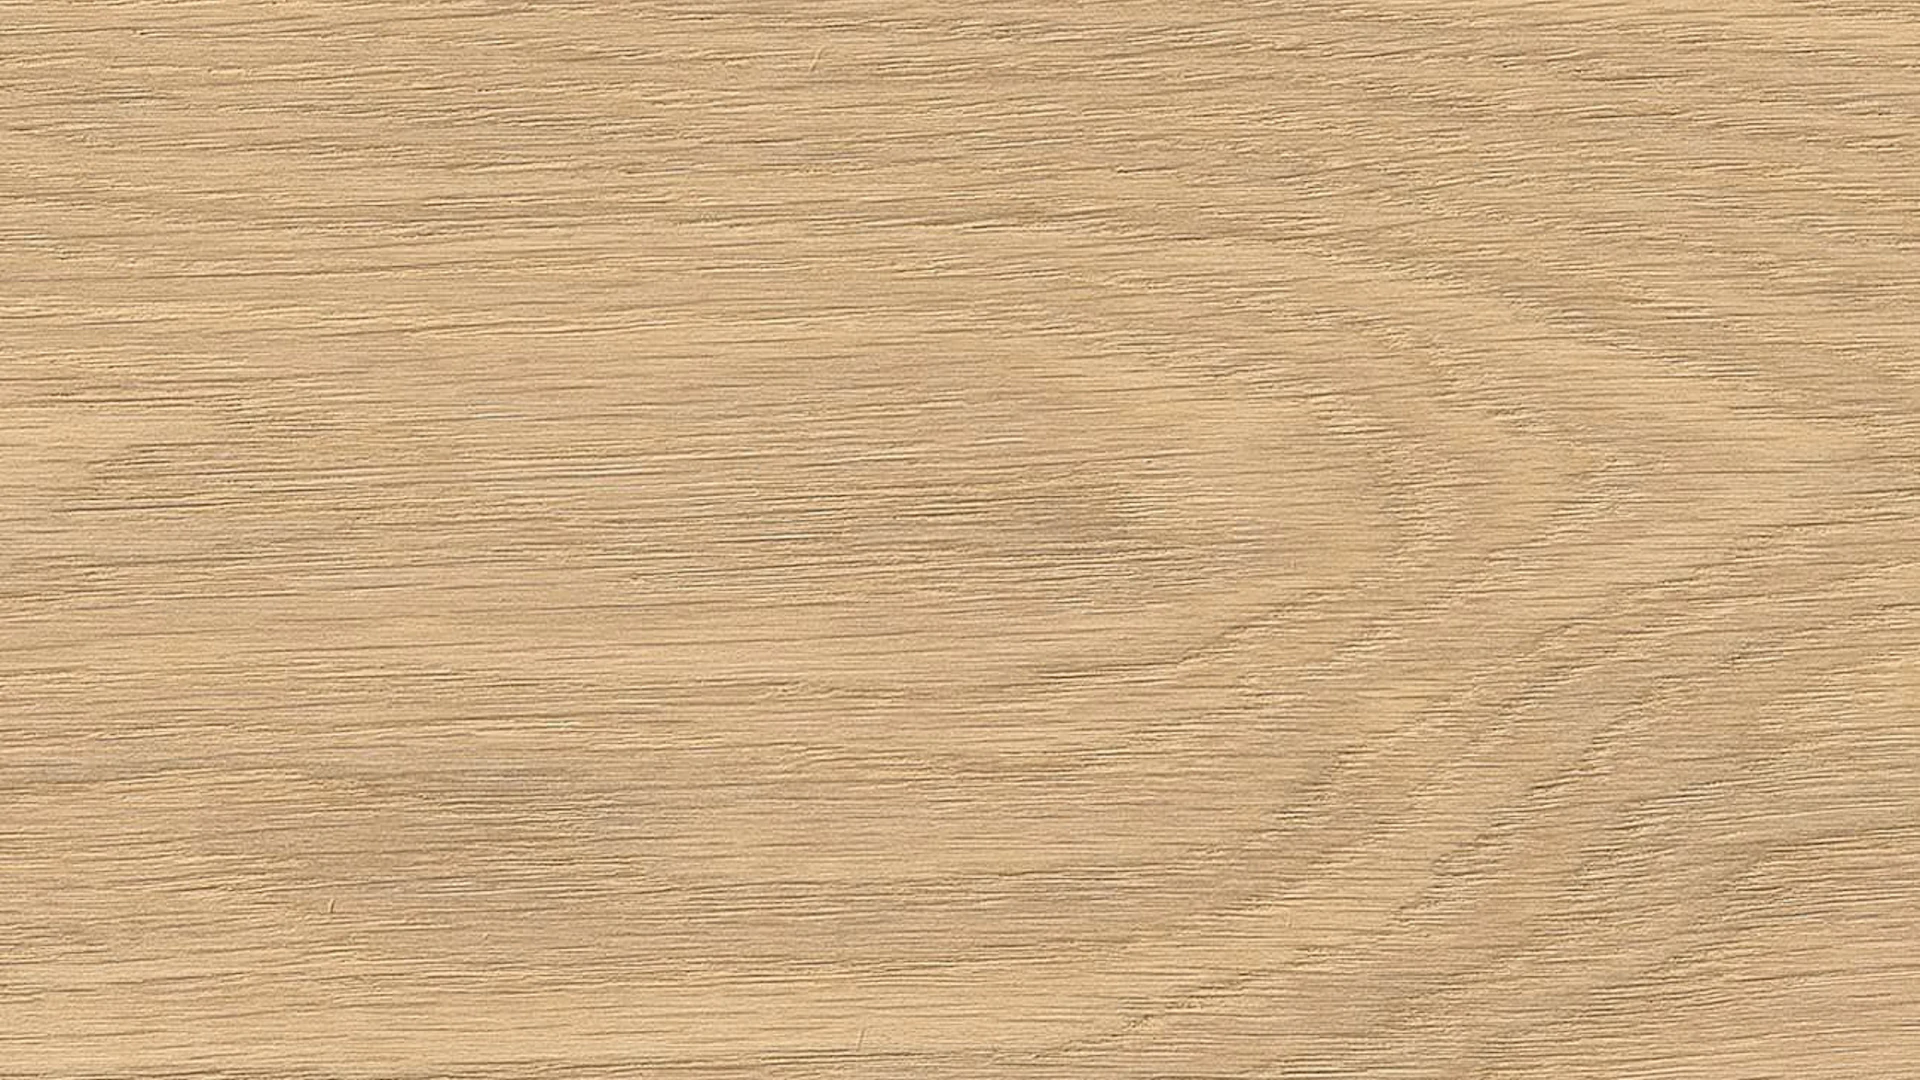 Haro Parquet Flooring - Series 4000 naturaLin plus White Oak Exclusive (531679)